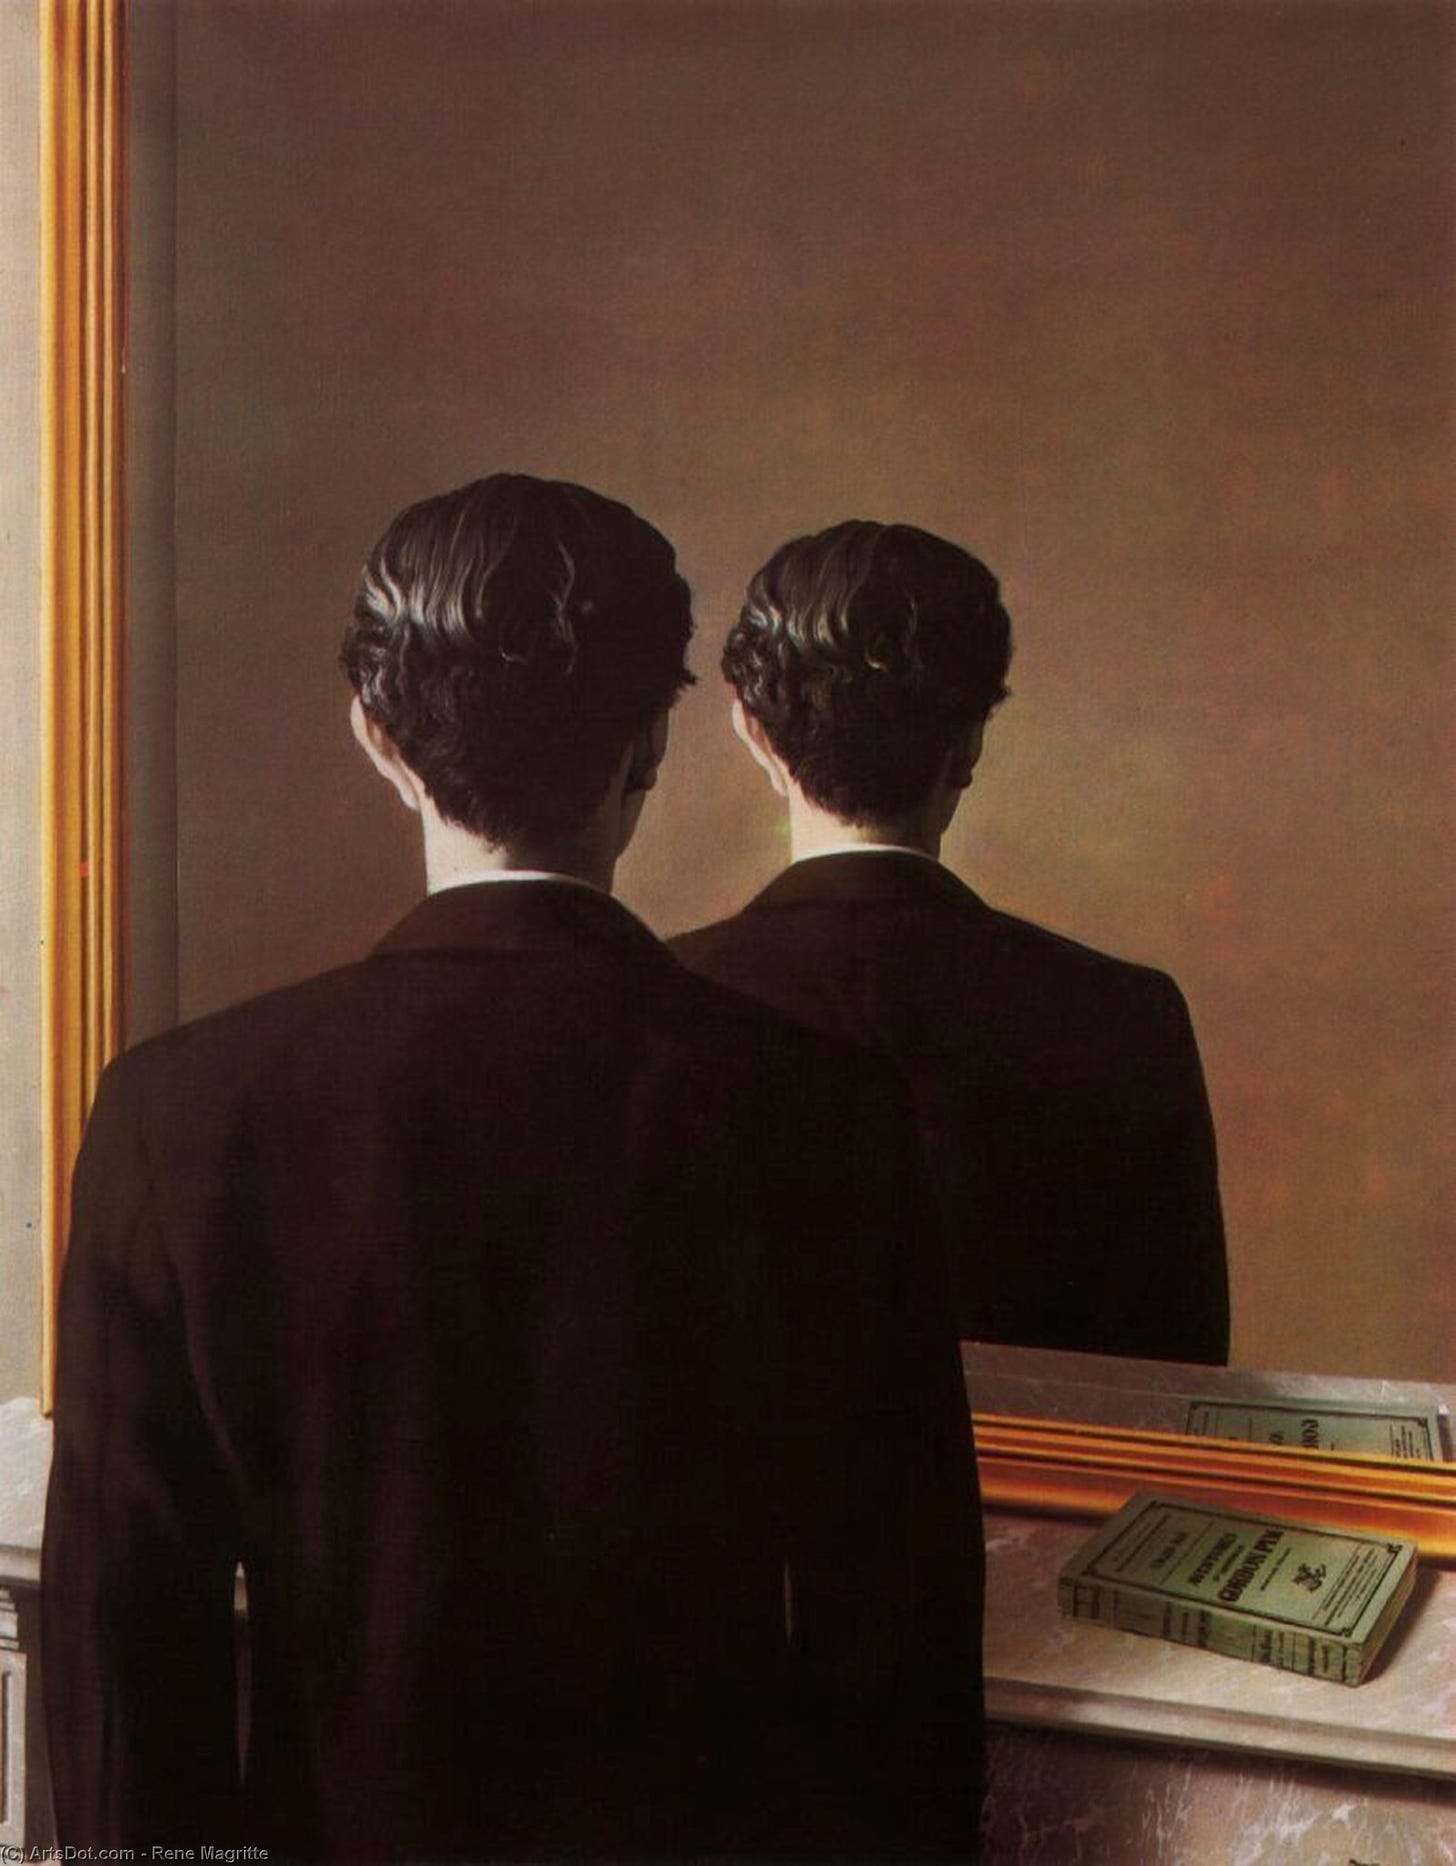 "Riproduzione vietata" di René Magritte, con un ragazzo di spalle con una giacca marrone che si specchia e vede riflessa la sua schiena, cioè la stessa che vediamo noi osservandolo. Sotto lo specchio c'è un davanzale con un libretto verde, che però si riflette correttamente nello specchio.